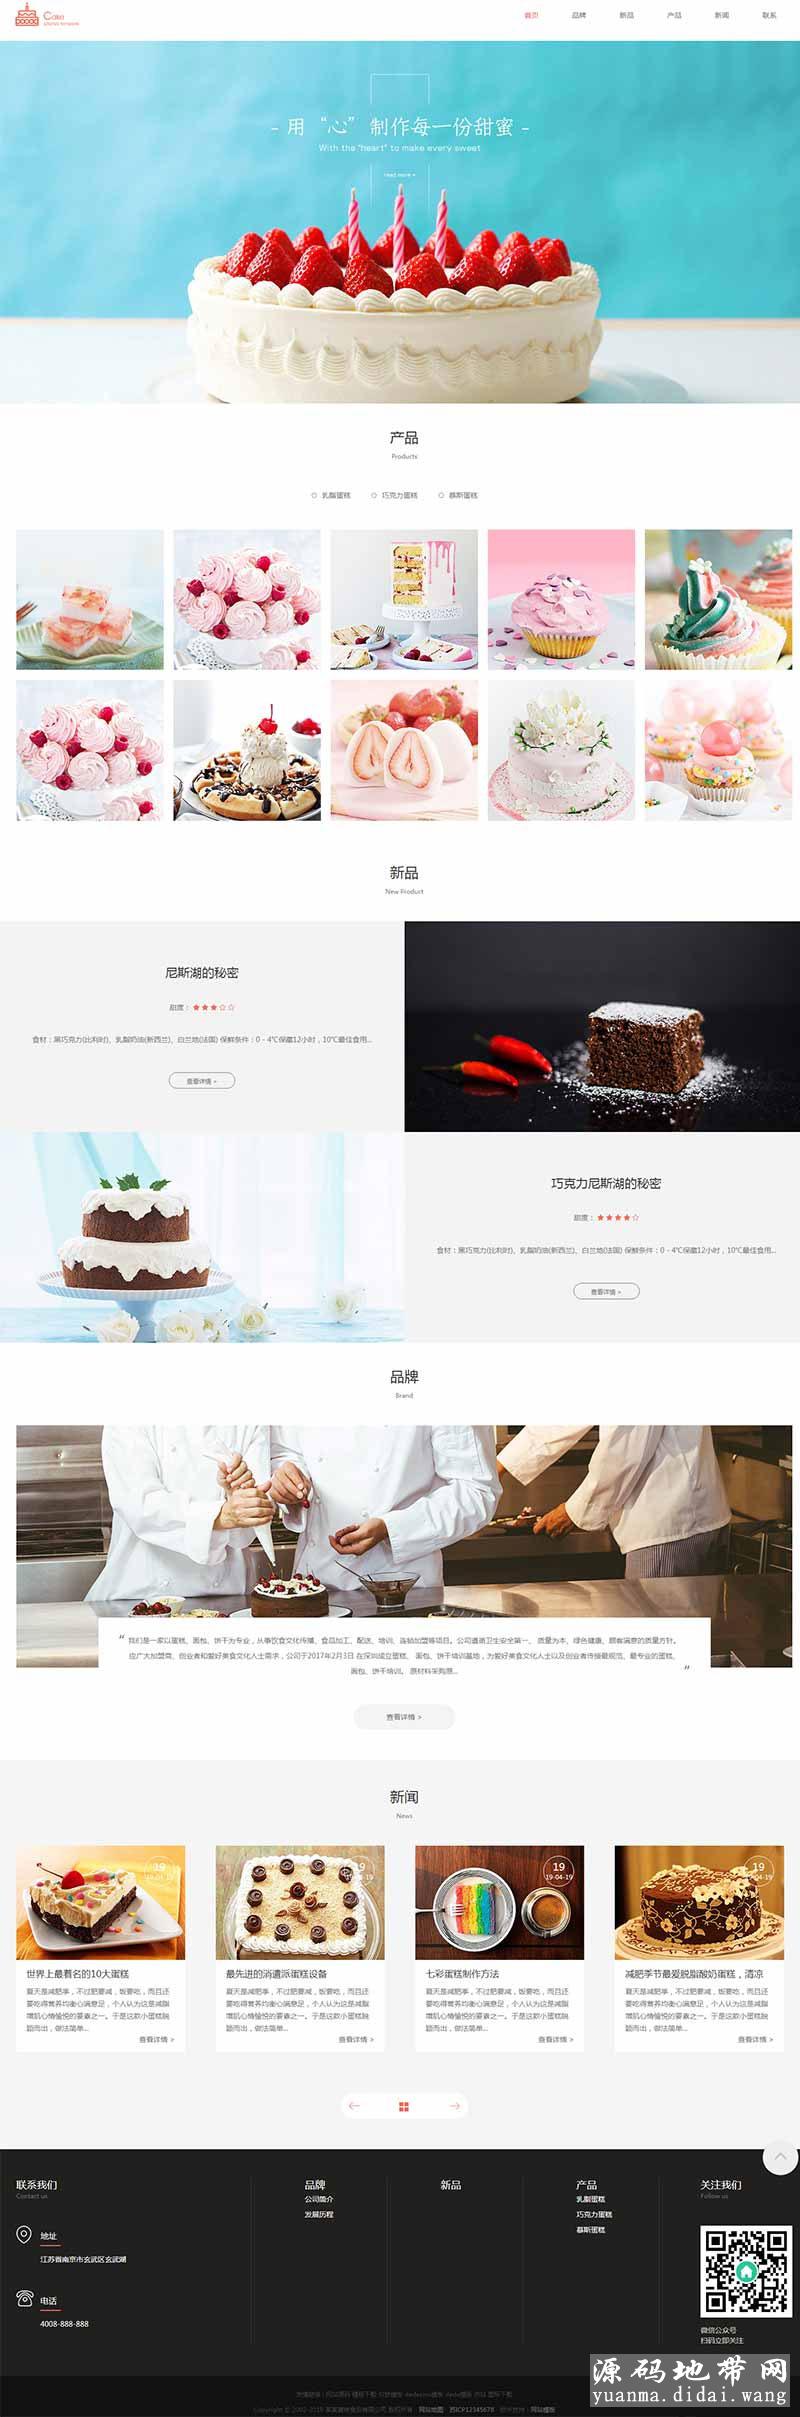 织梦dedecms响应式蛋糕甜点类网站模板(自适应手机移动端)